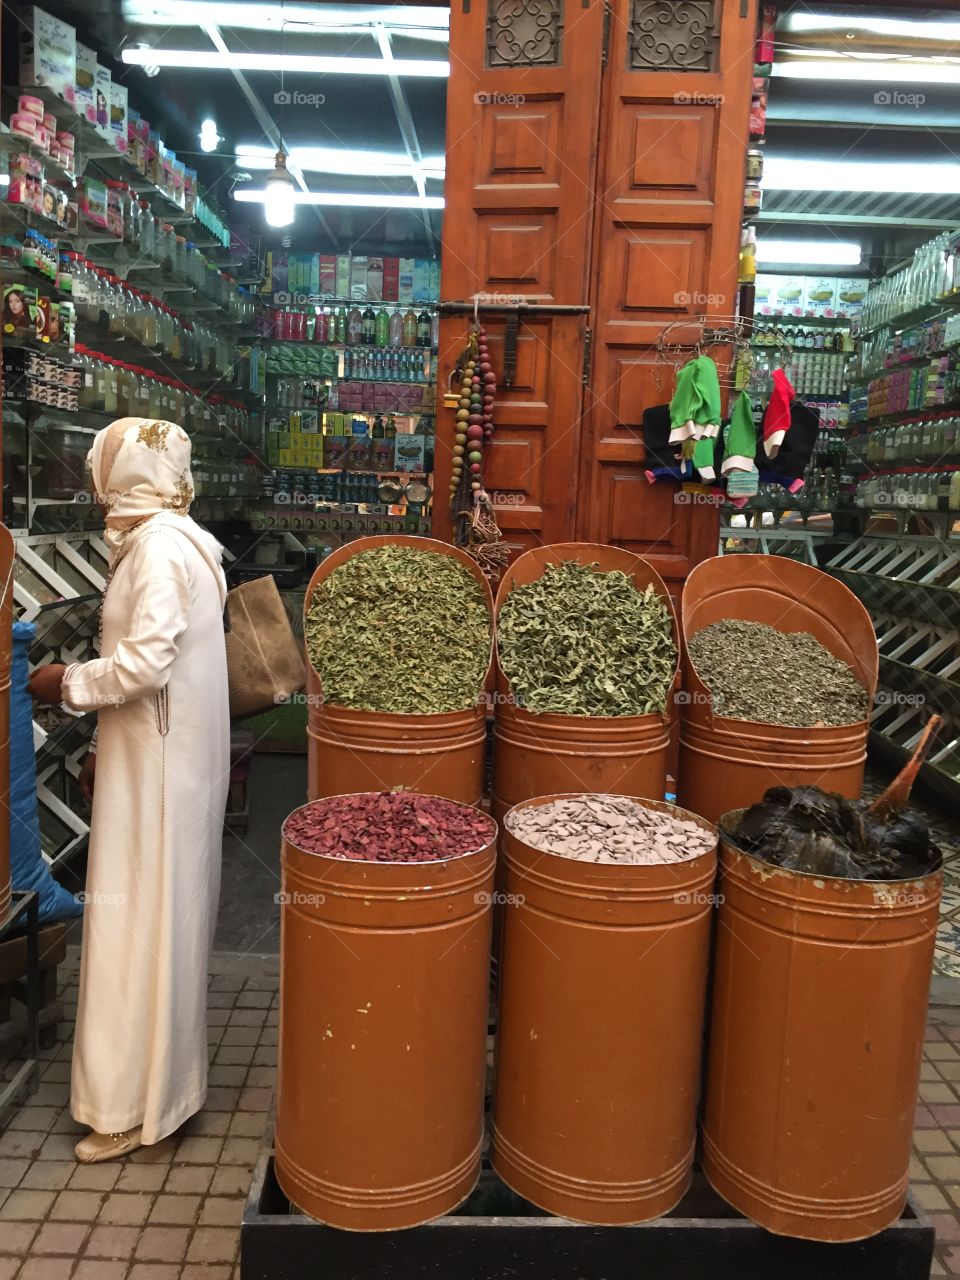 Moroccan spice shop